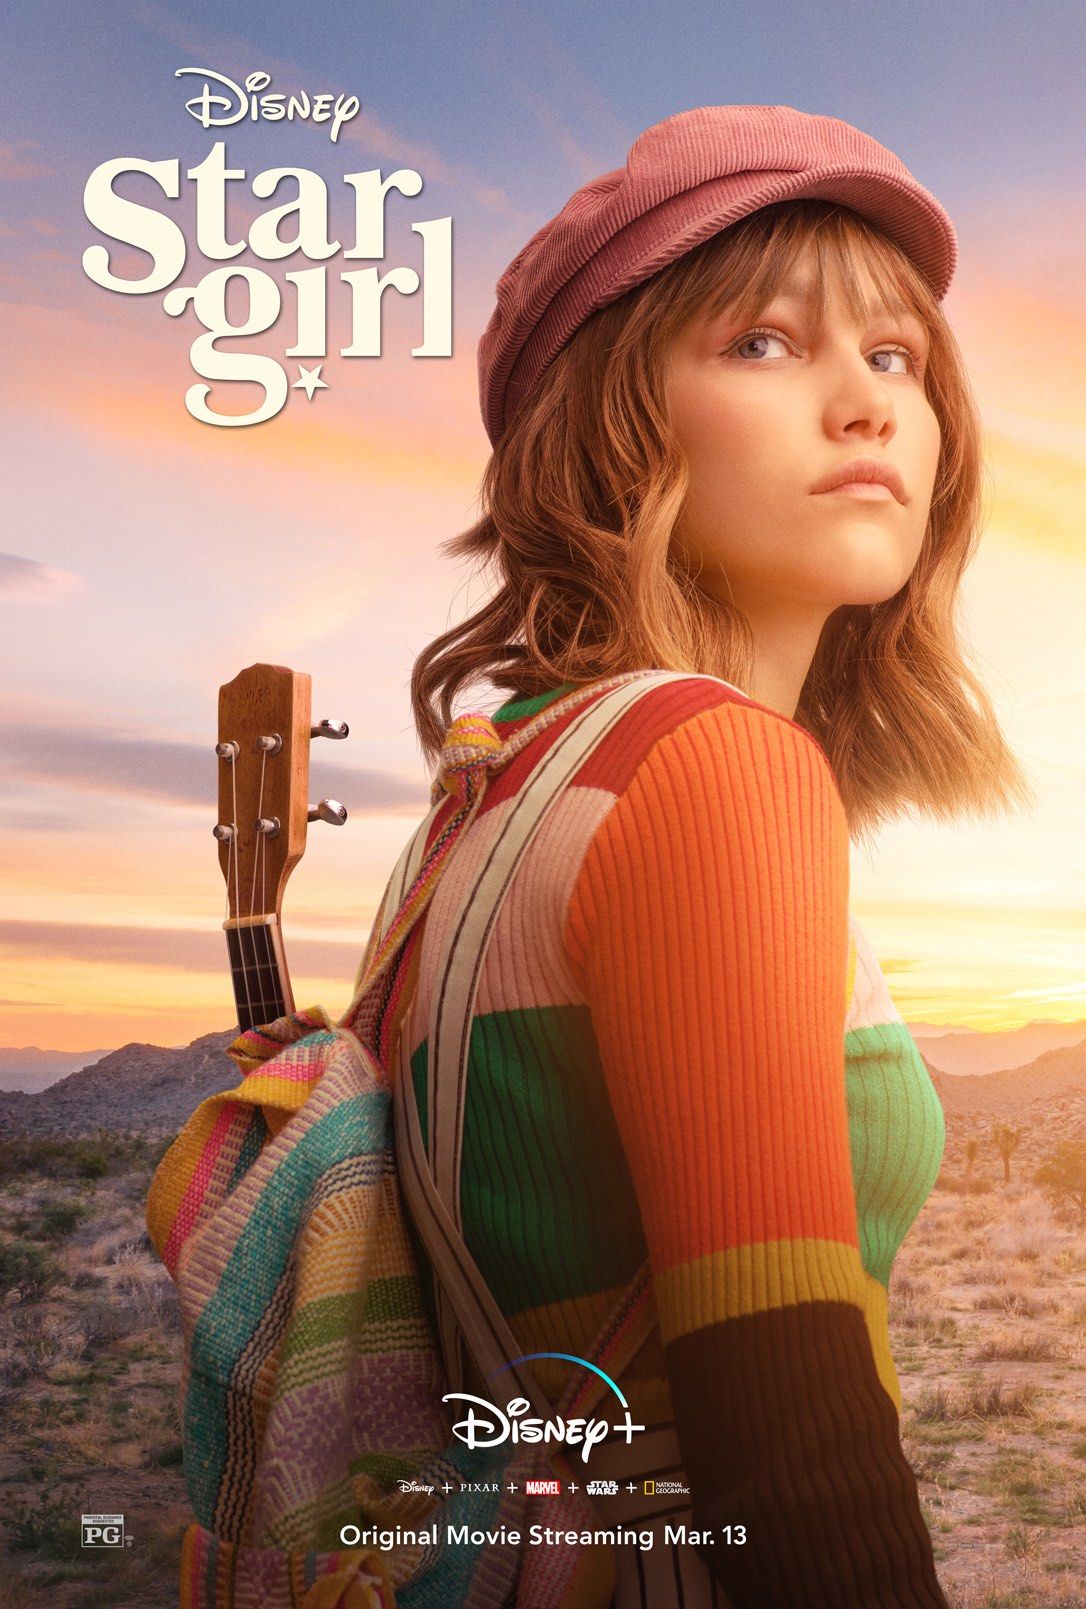 Grace VanderWaal stars in Disney+'s Stargirl movie